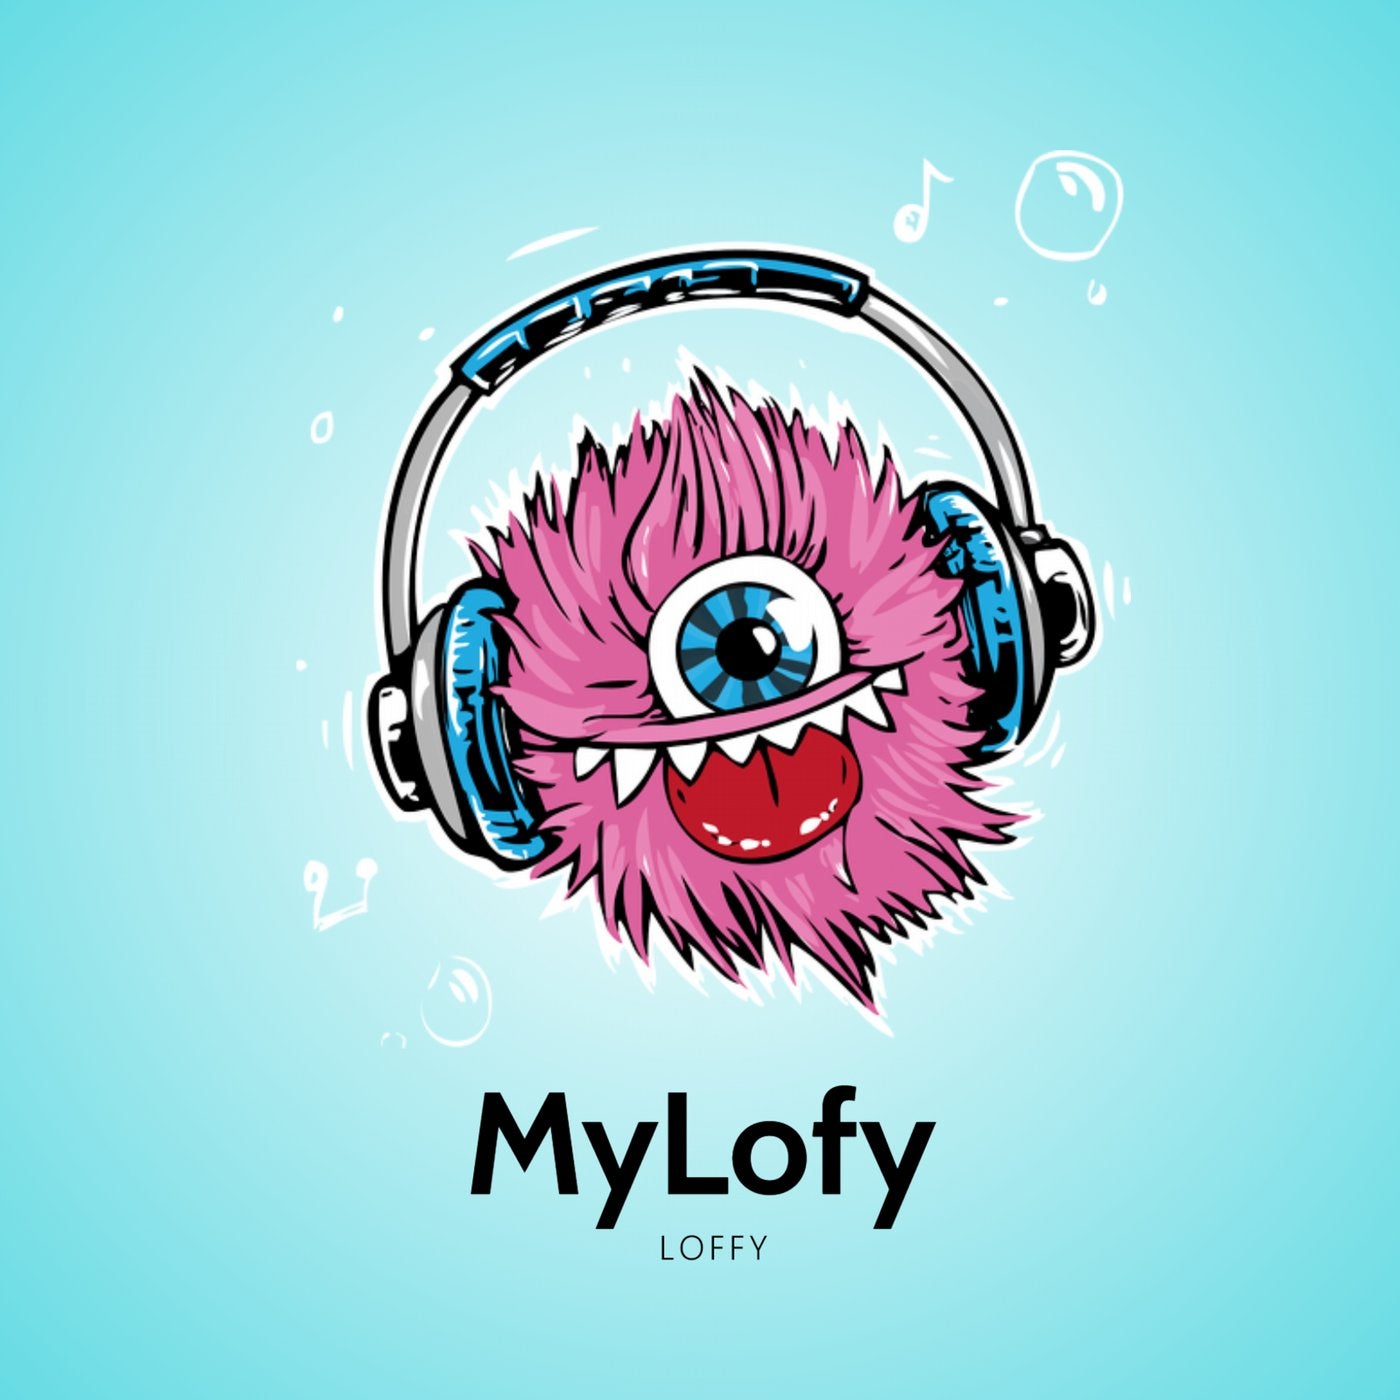 Mylofy